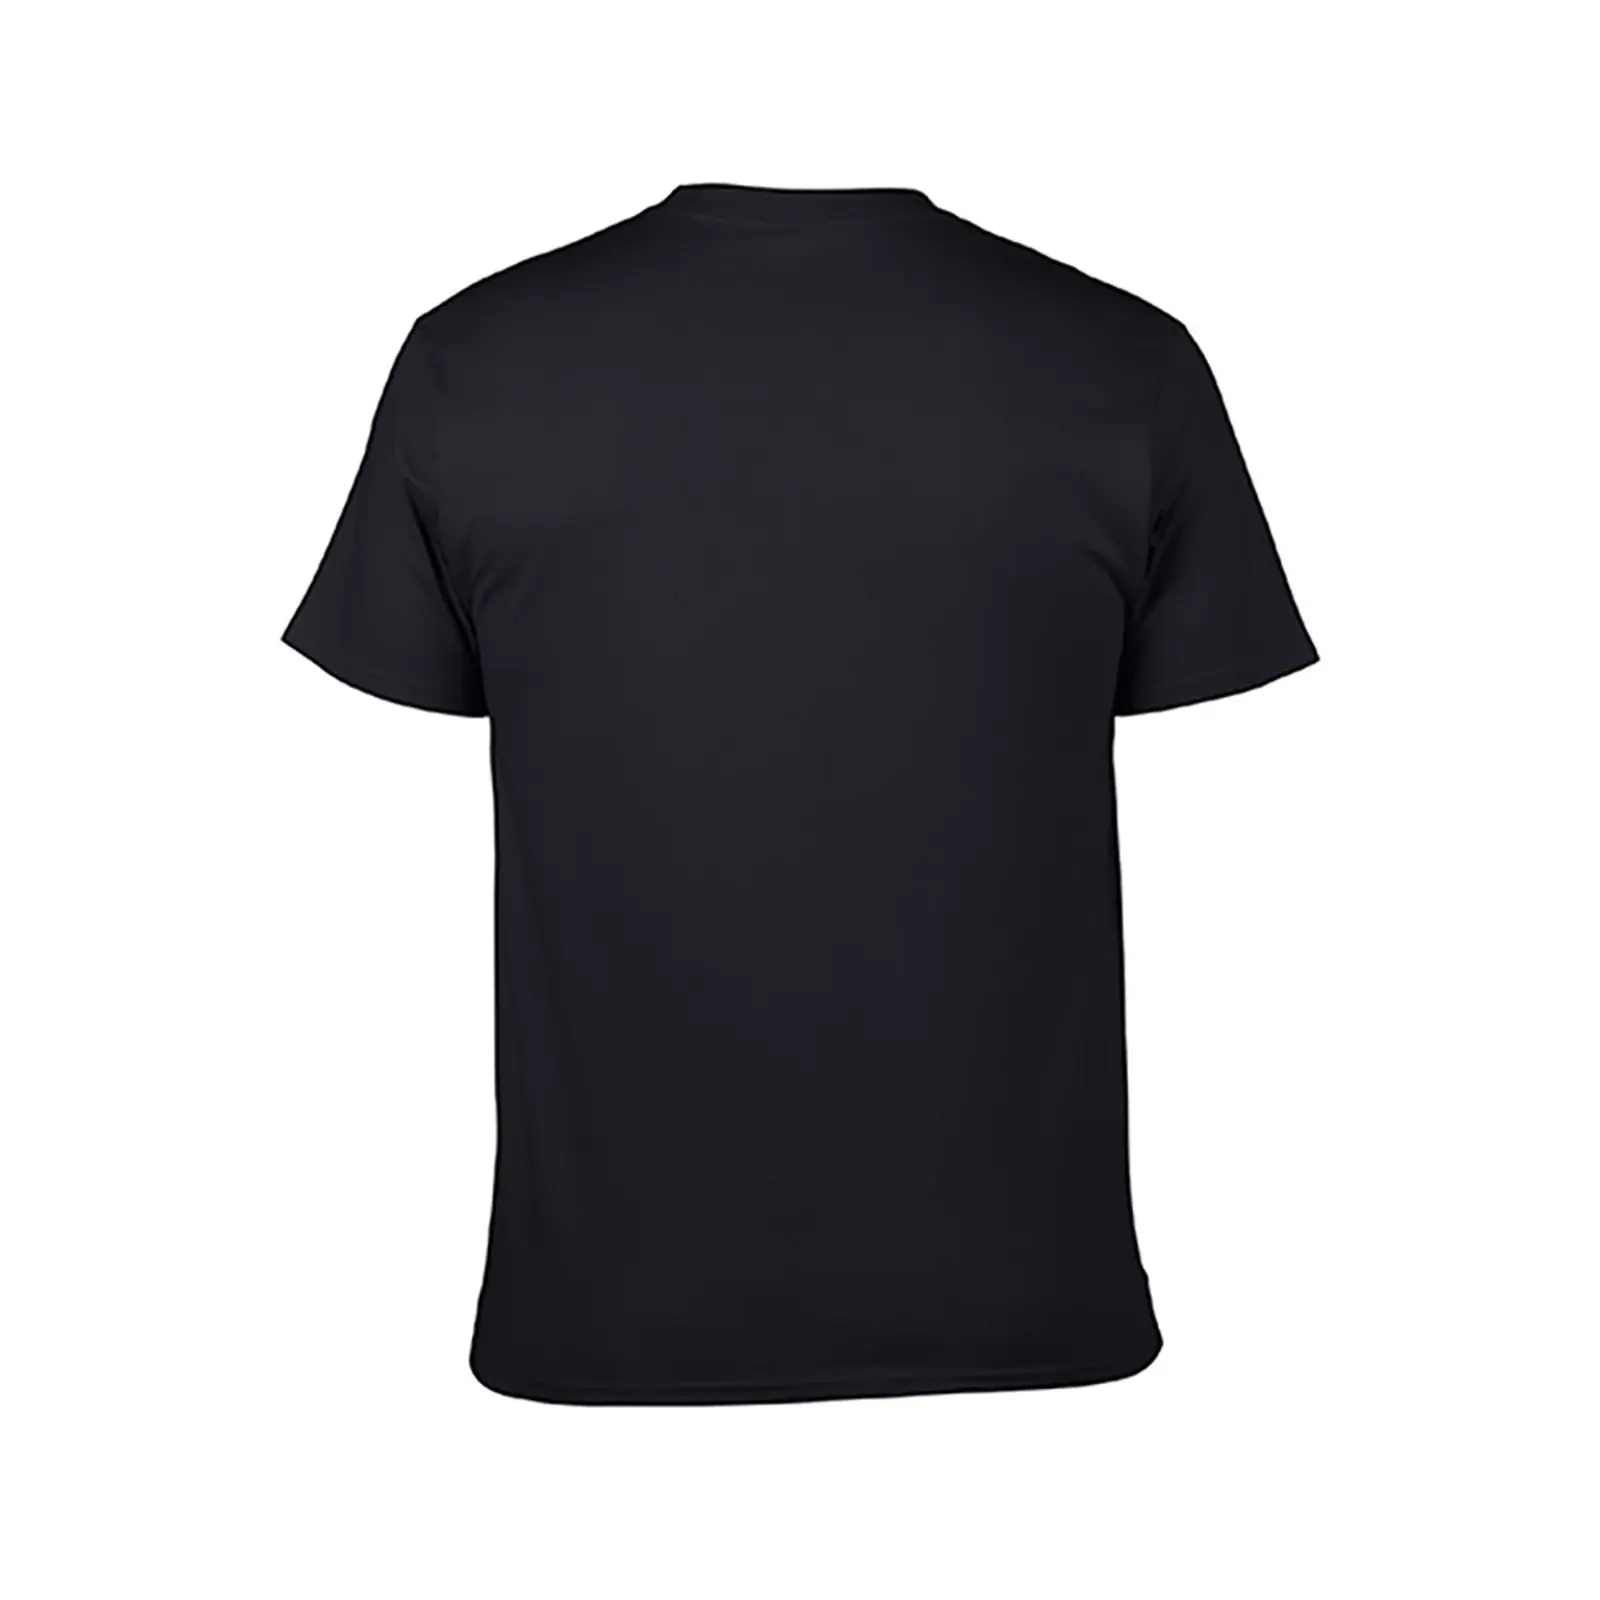 Unimog Ретро футболка sublime футболка спортивные рубашки fruit of the loom мужские футболки Изображение 2